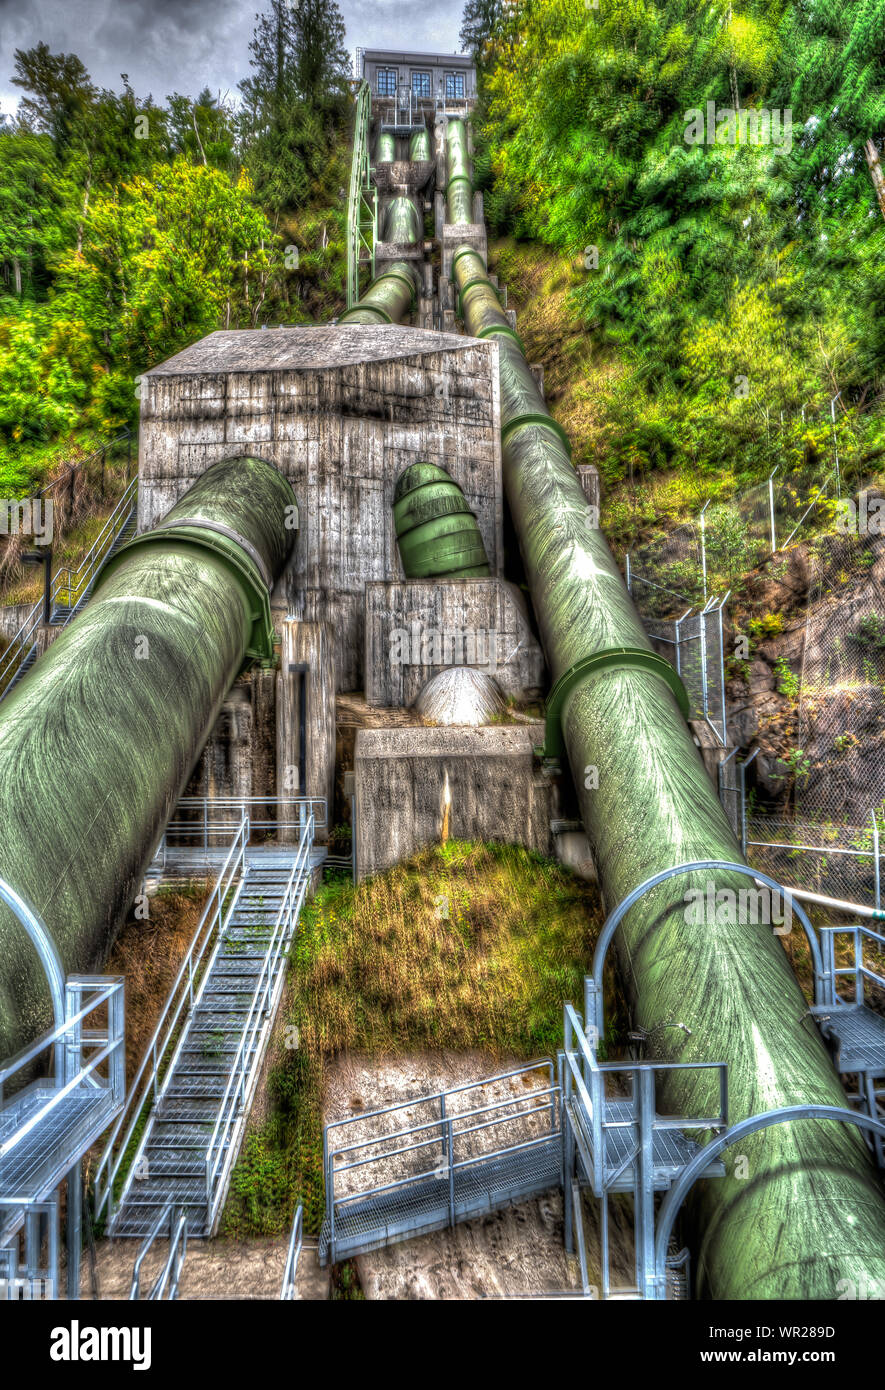 Les tubes d'eau de la centrale hydroélectrique Banque D'Images